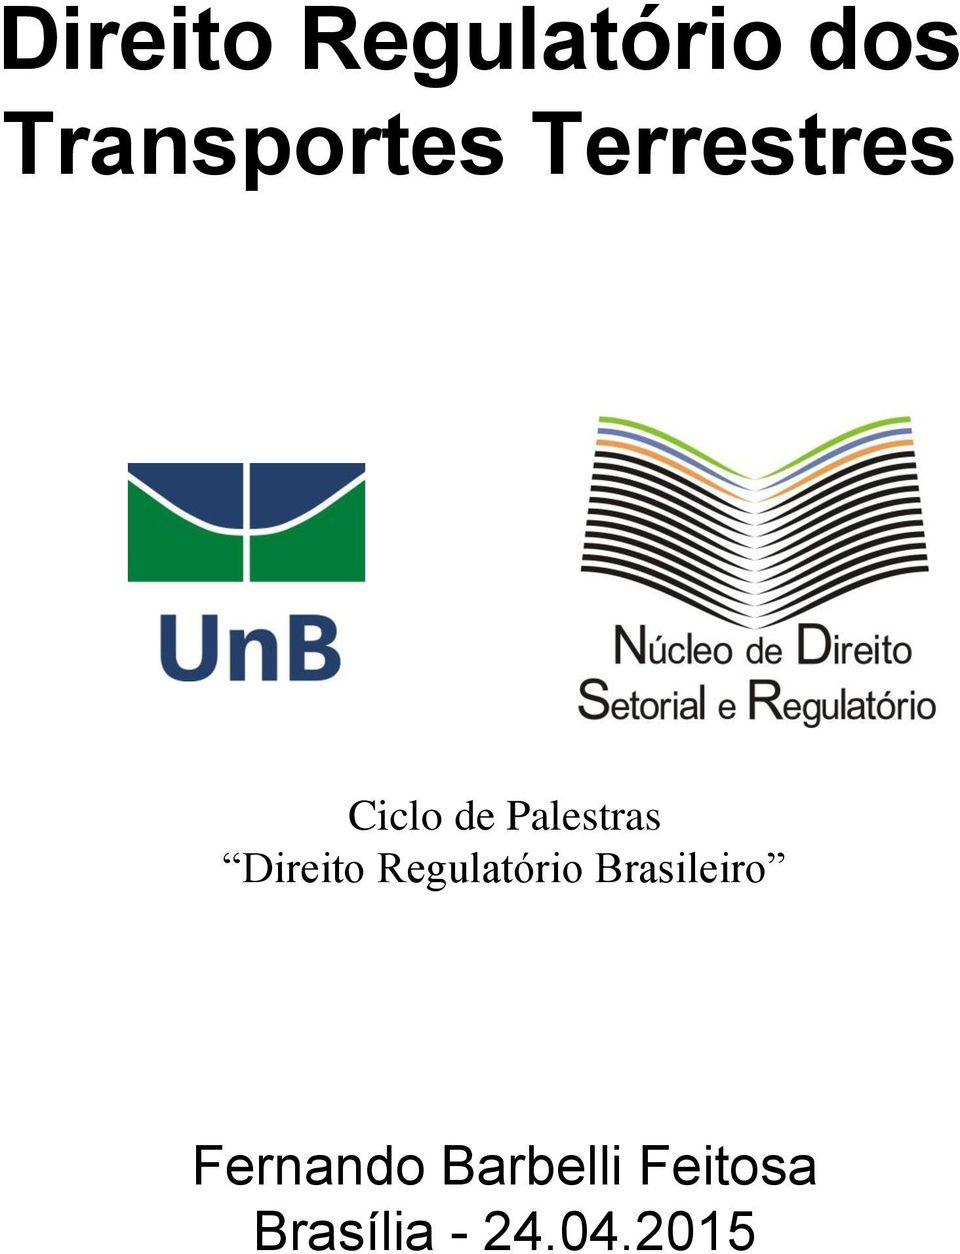 Direito Regulatório Brasileiro